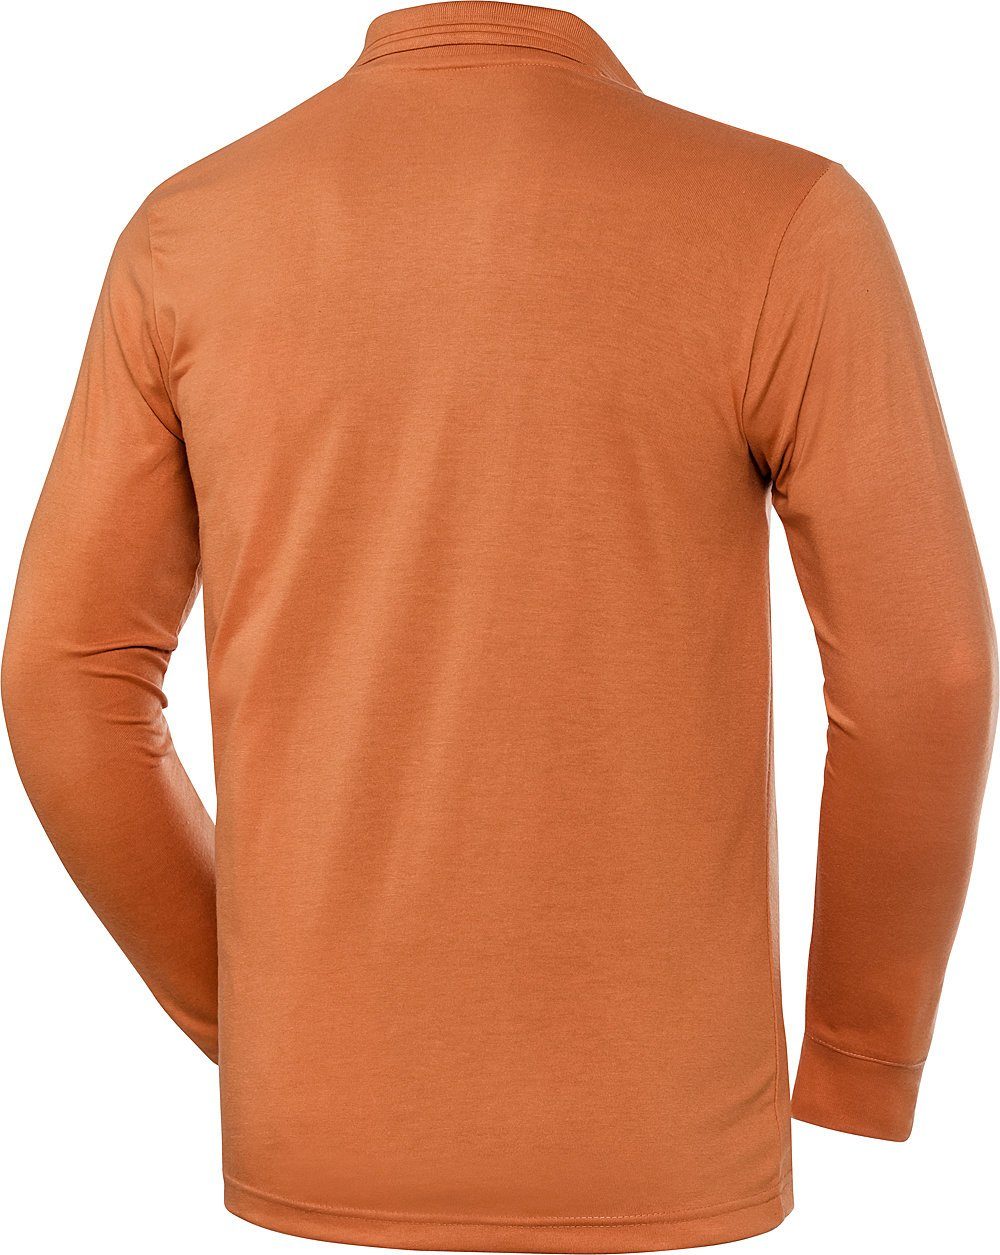 HENSON&HENSON Langarm-Poloshirt superweiches orange Jersey-Gewebe